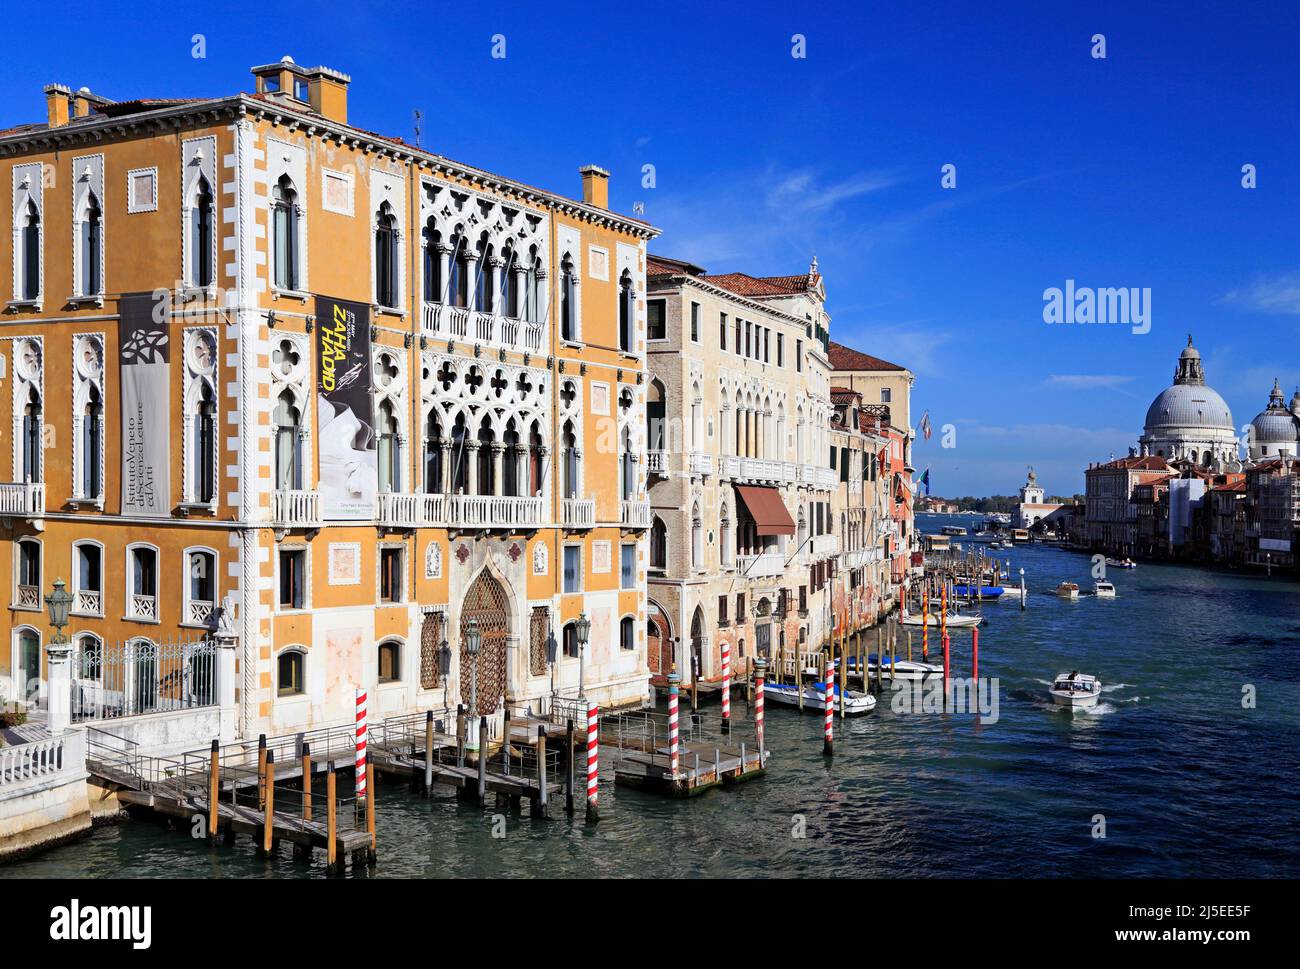 Palazzo cavalli-Franchetti sul canale Grande, Venezia, Italia. Chiesa di Santa Maria della Salute sullo sfondo Foto Stock